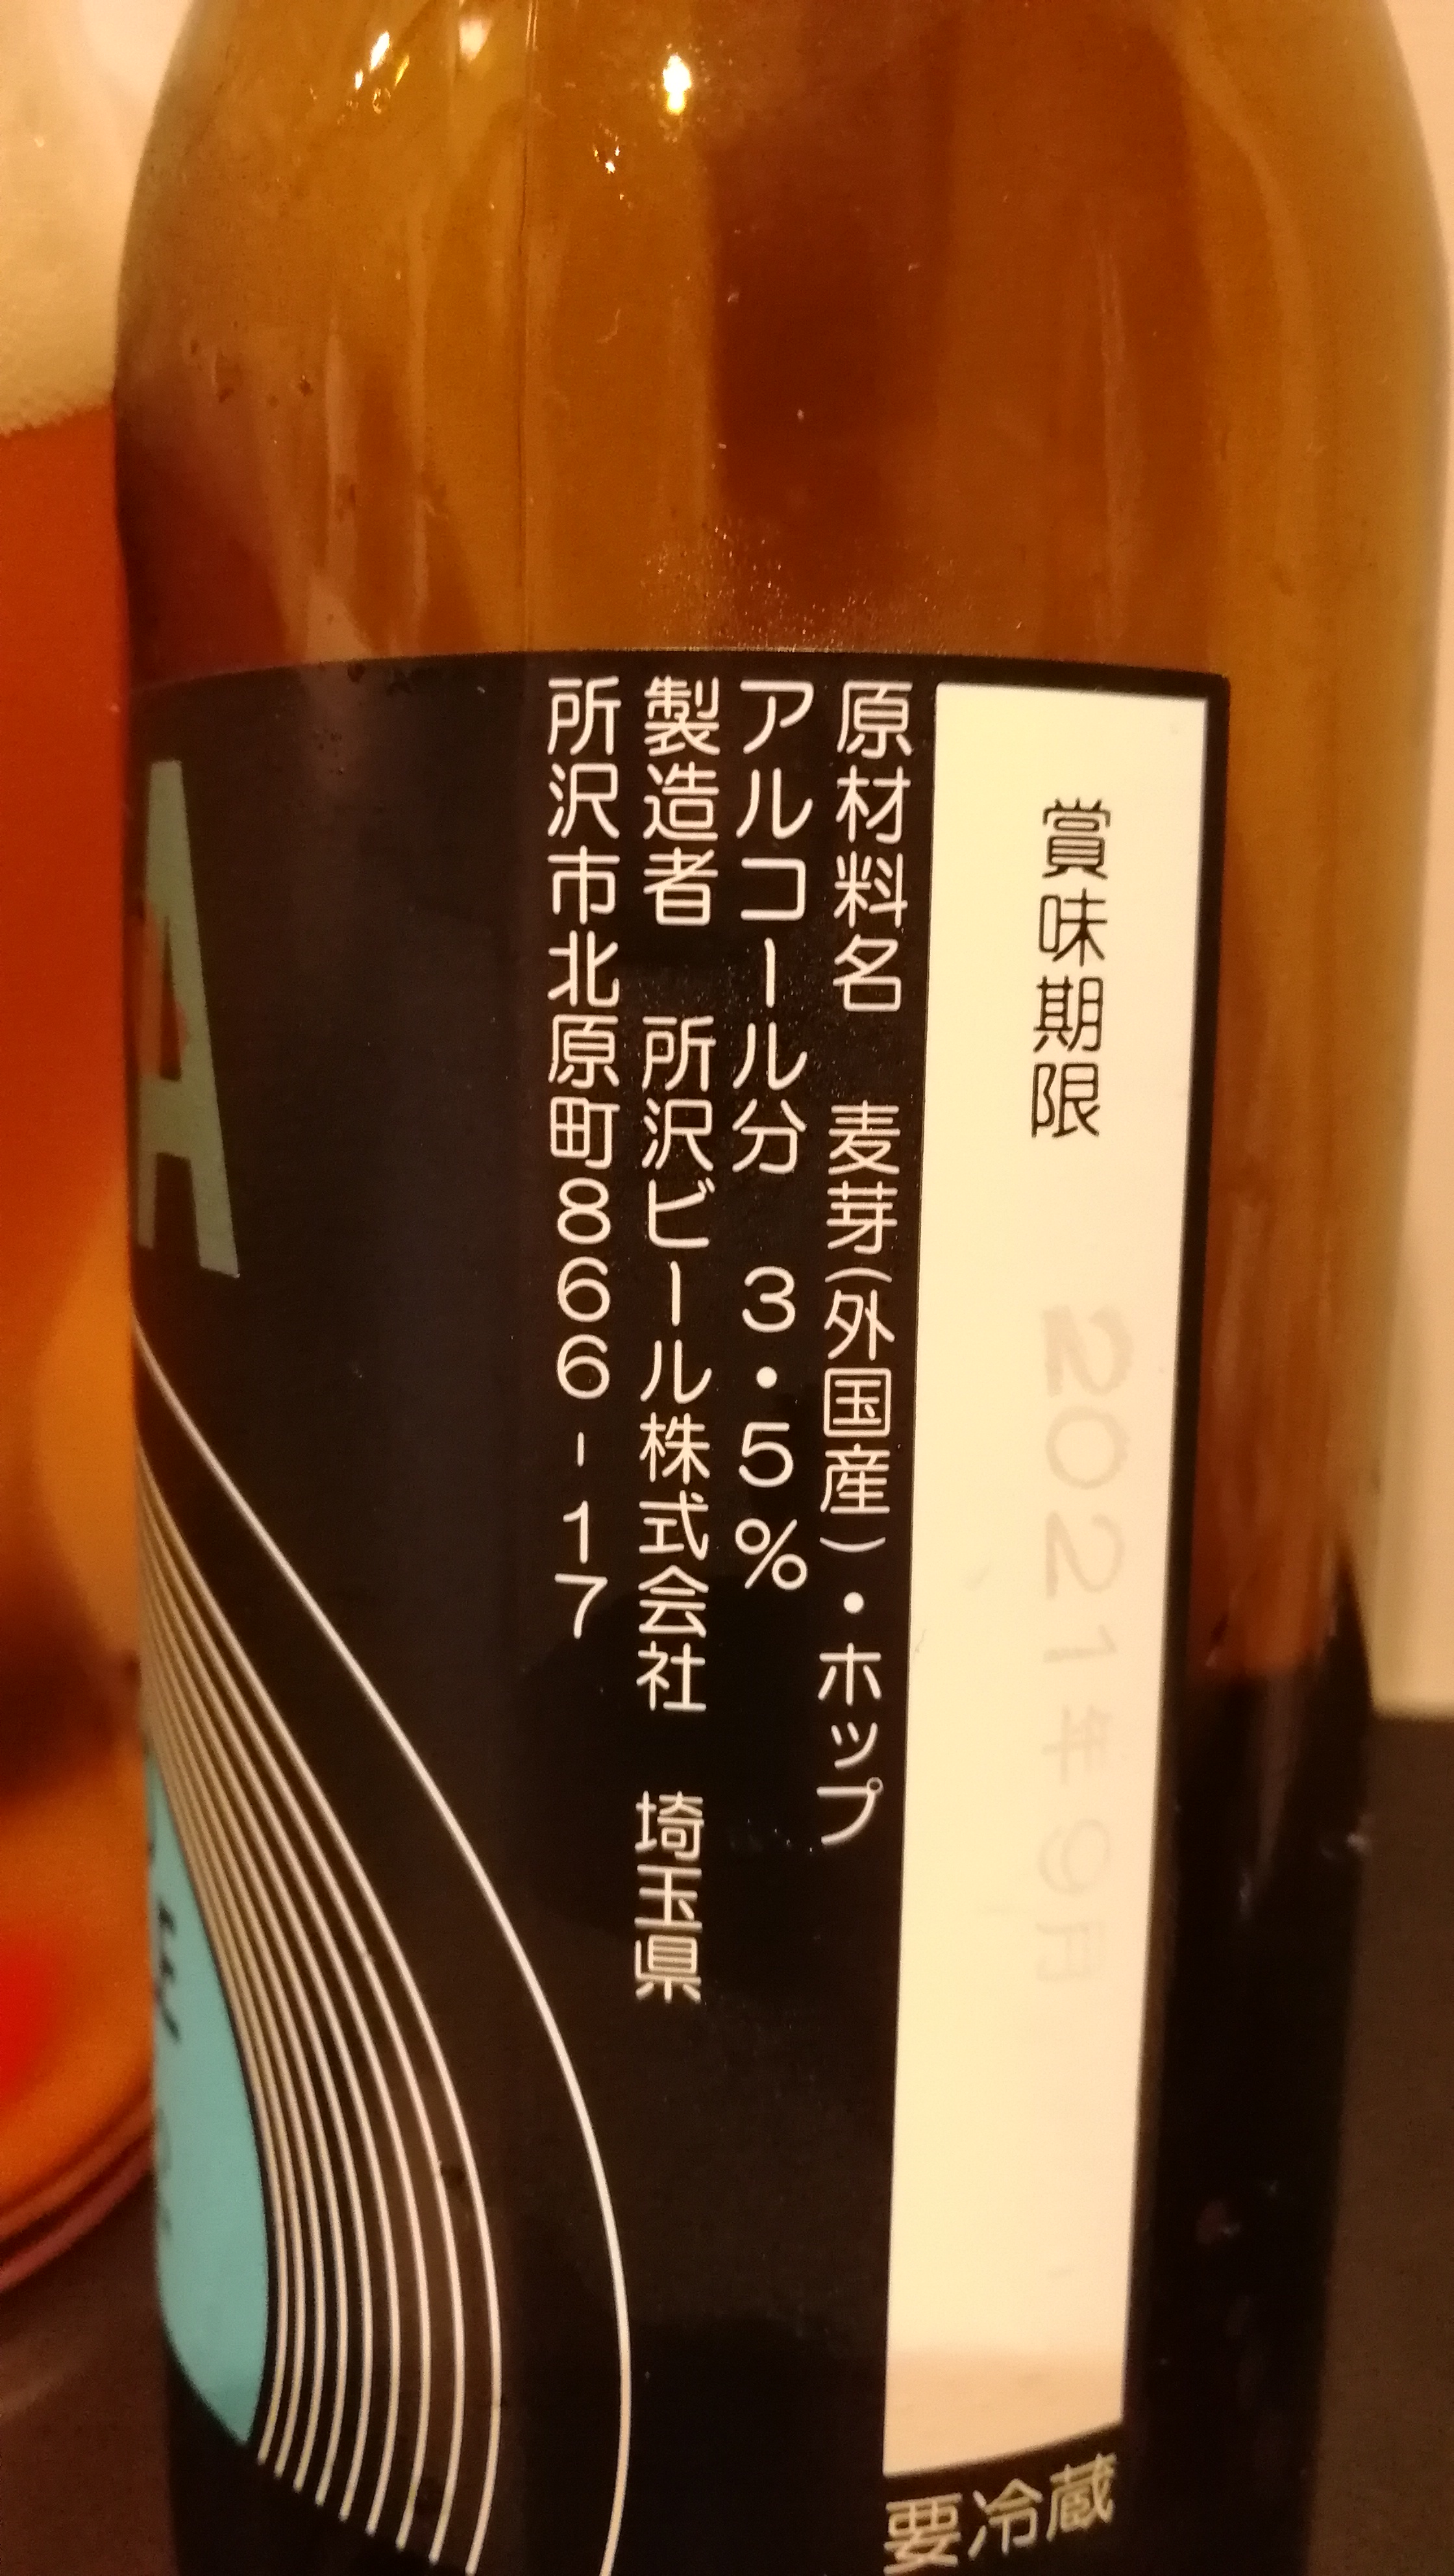 埼玉　所沢ビール株式会社　SORA SESSION-SMOKED ALE